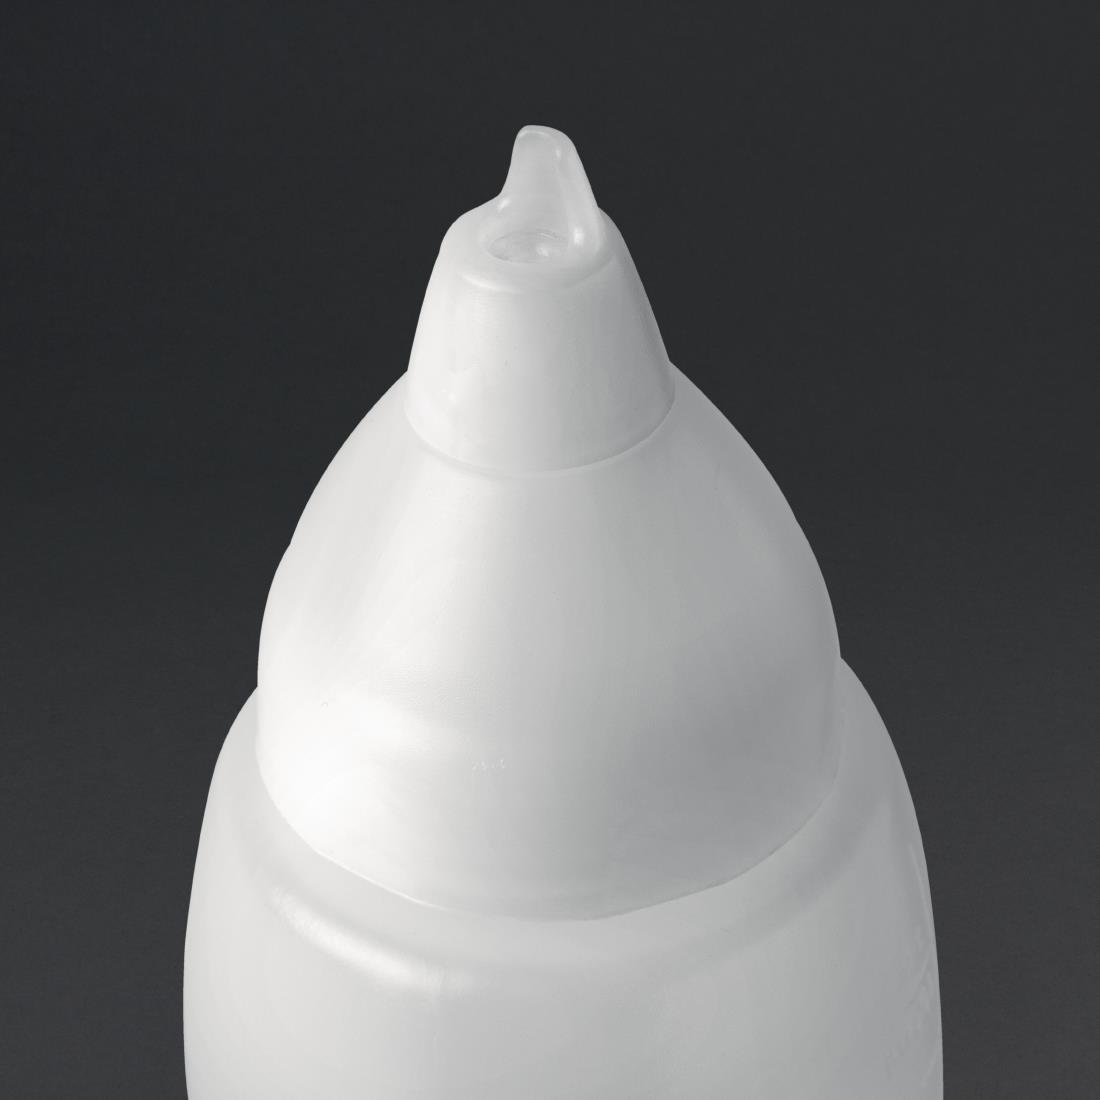 Araven Clear Non-drip Sauce Bottle 35oz - CW114  - 2